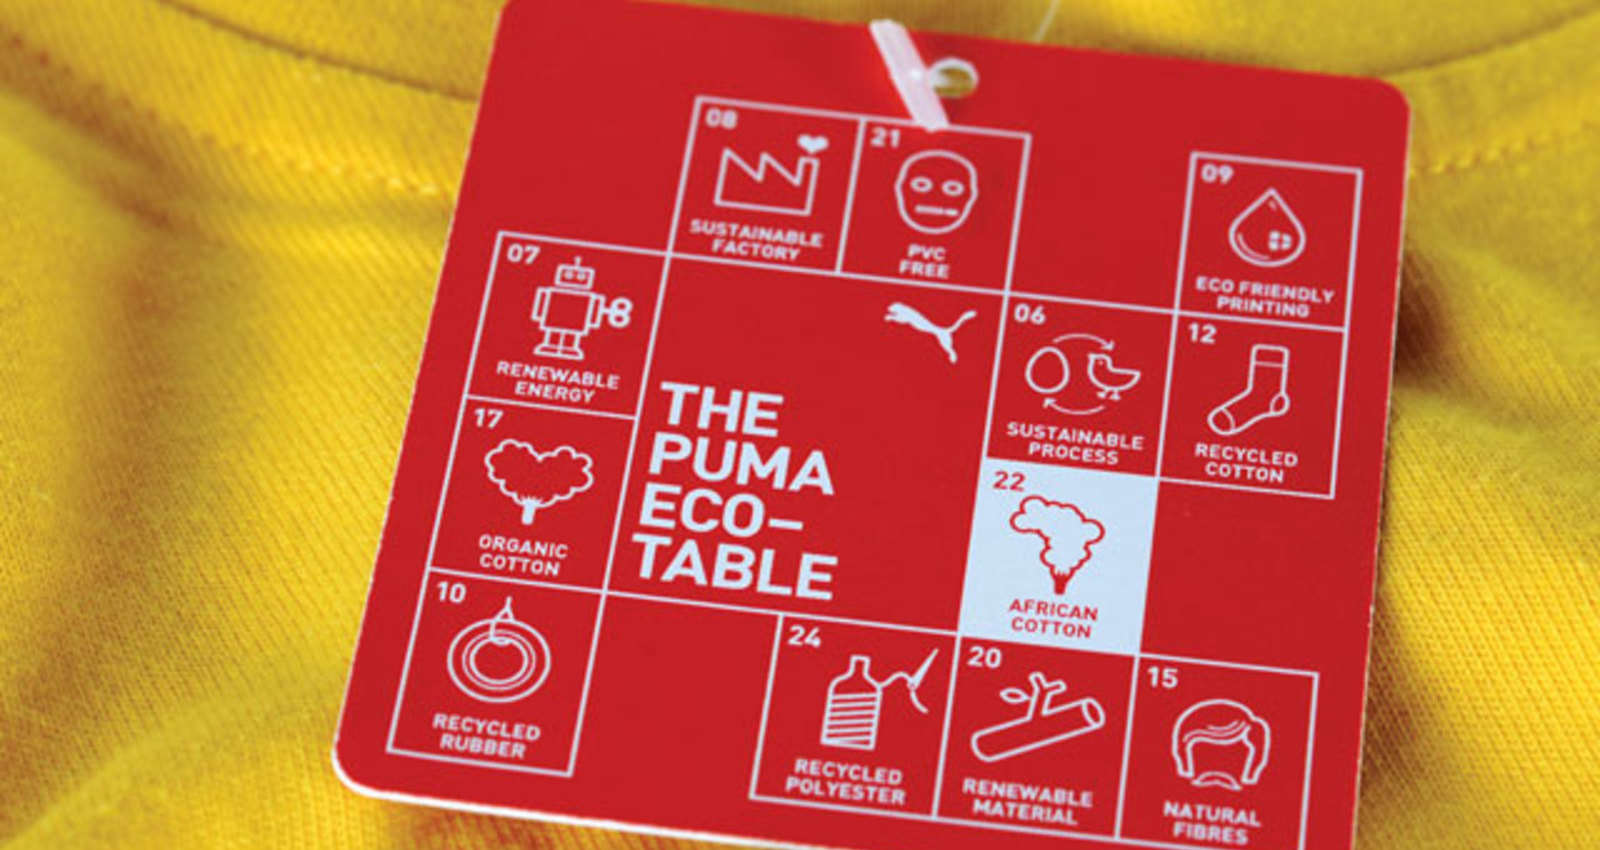 The PUMA Eco-Table